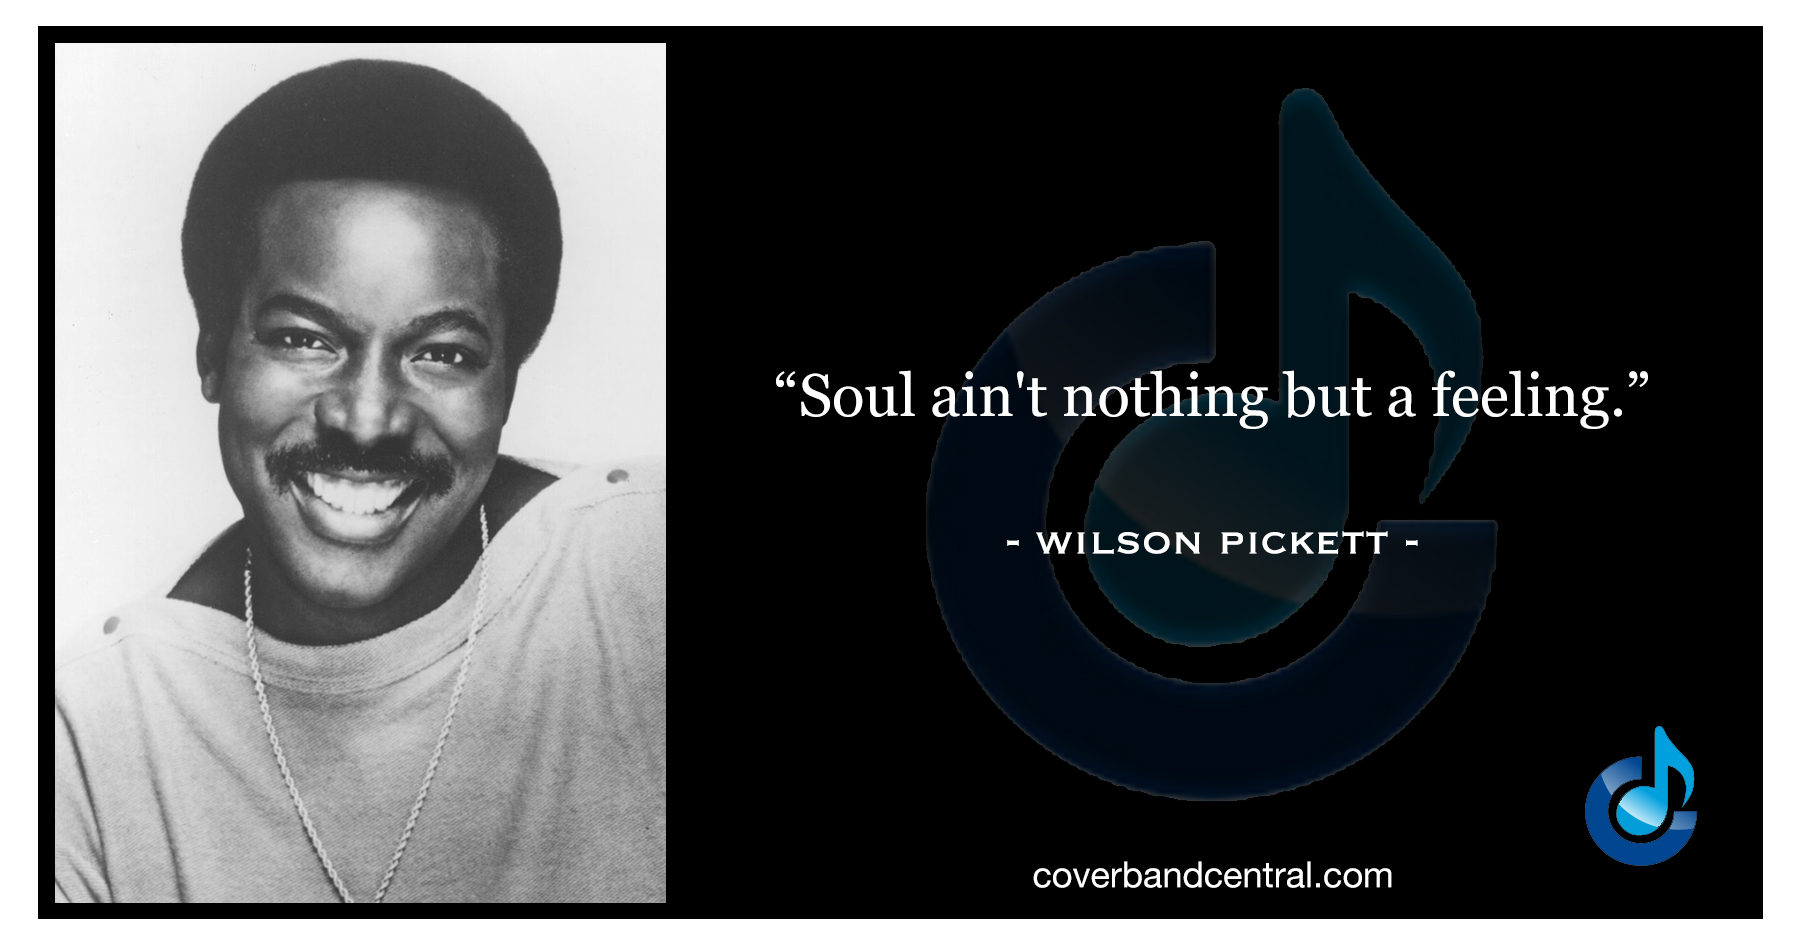 Wilson Pickett quote